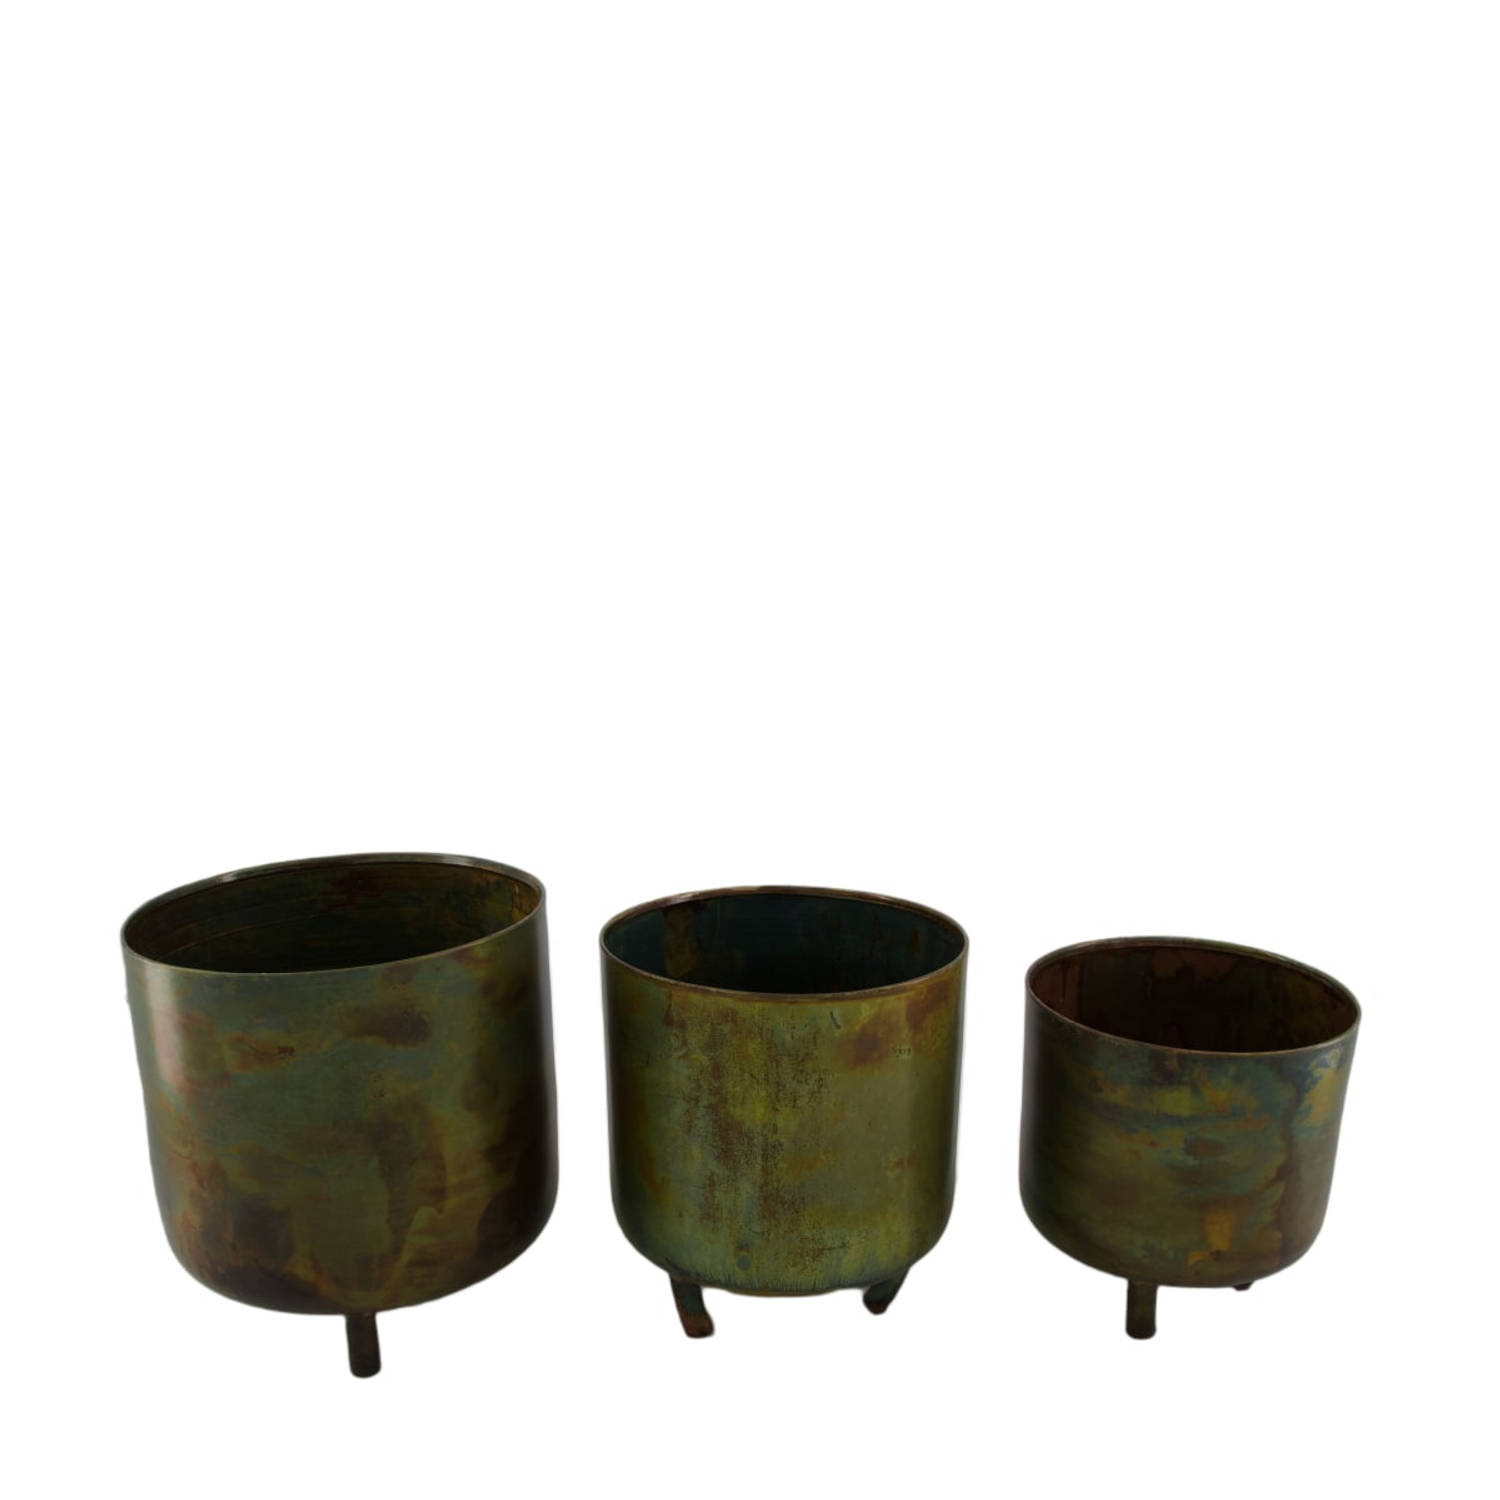 DKNC Plantenbakken metaal op standaard 17x17x20 cm Set van 3 Groen